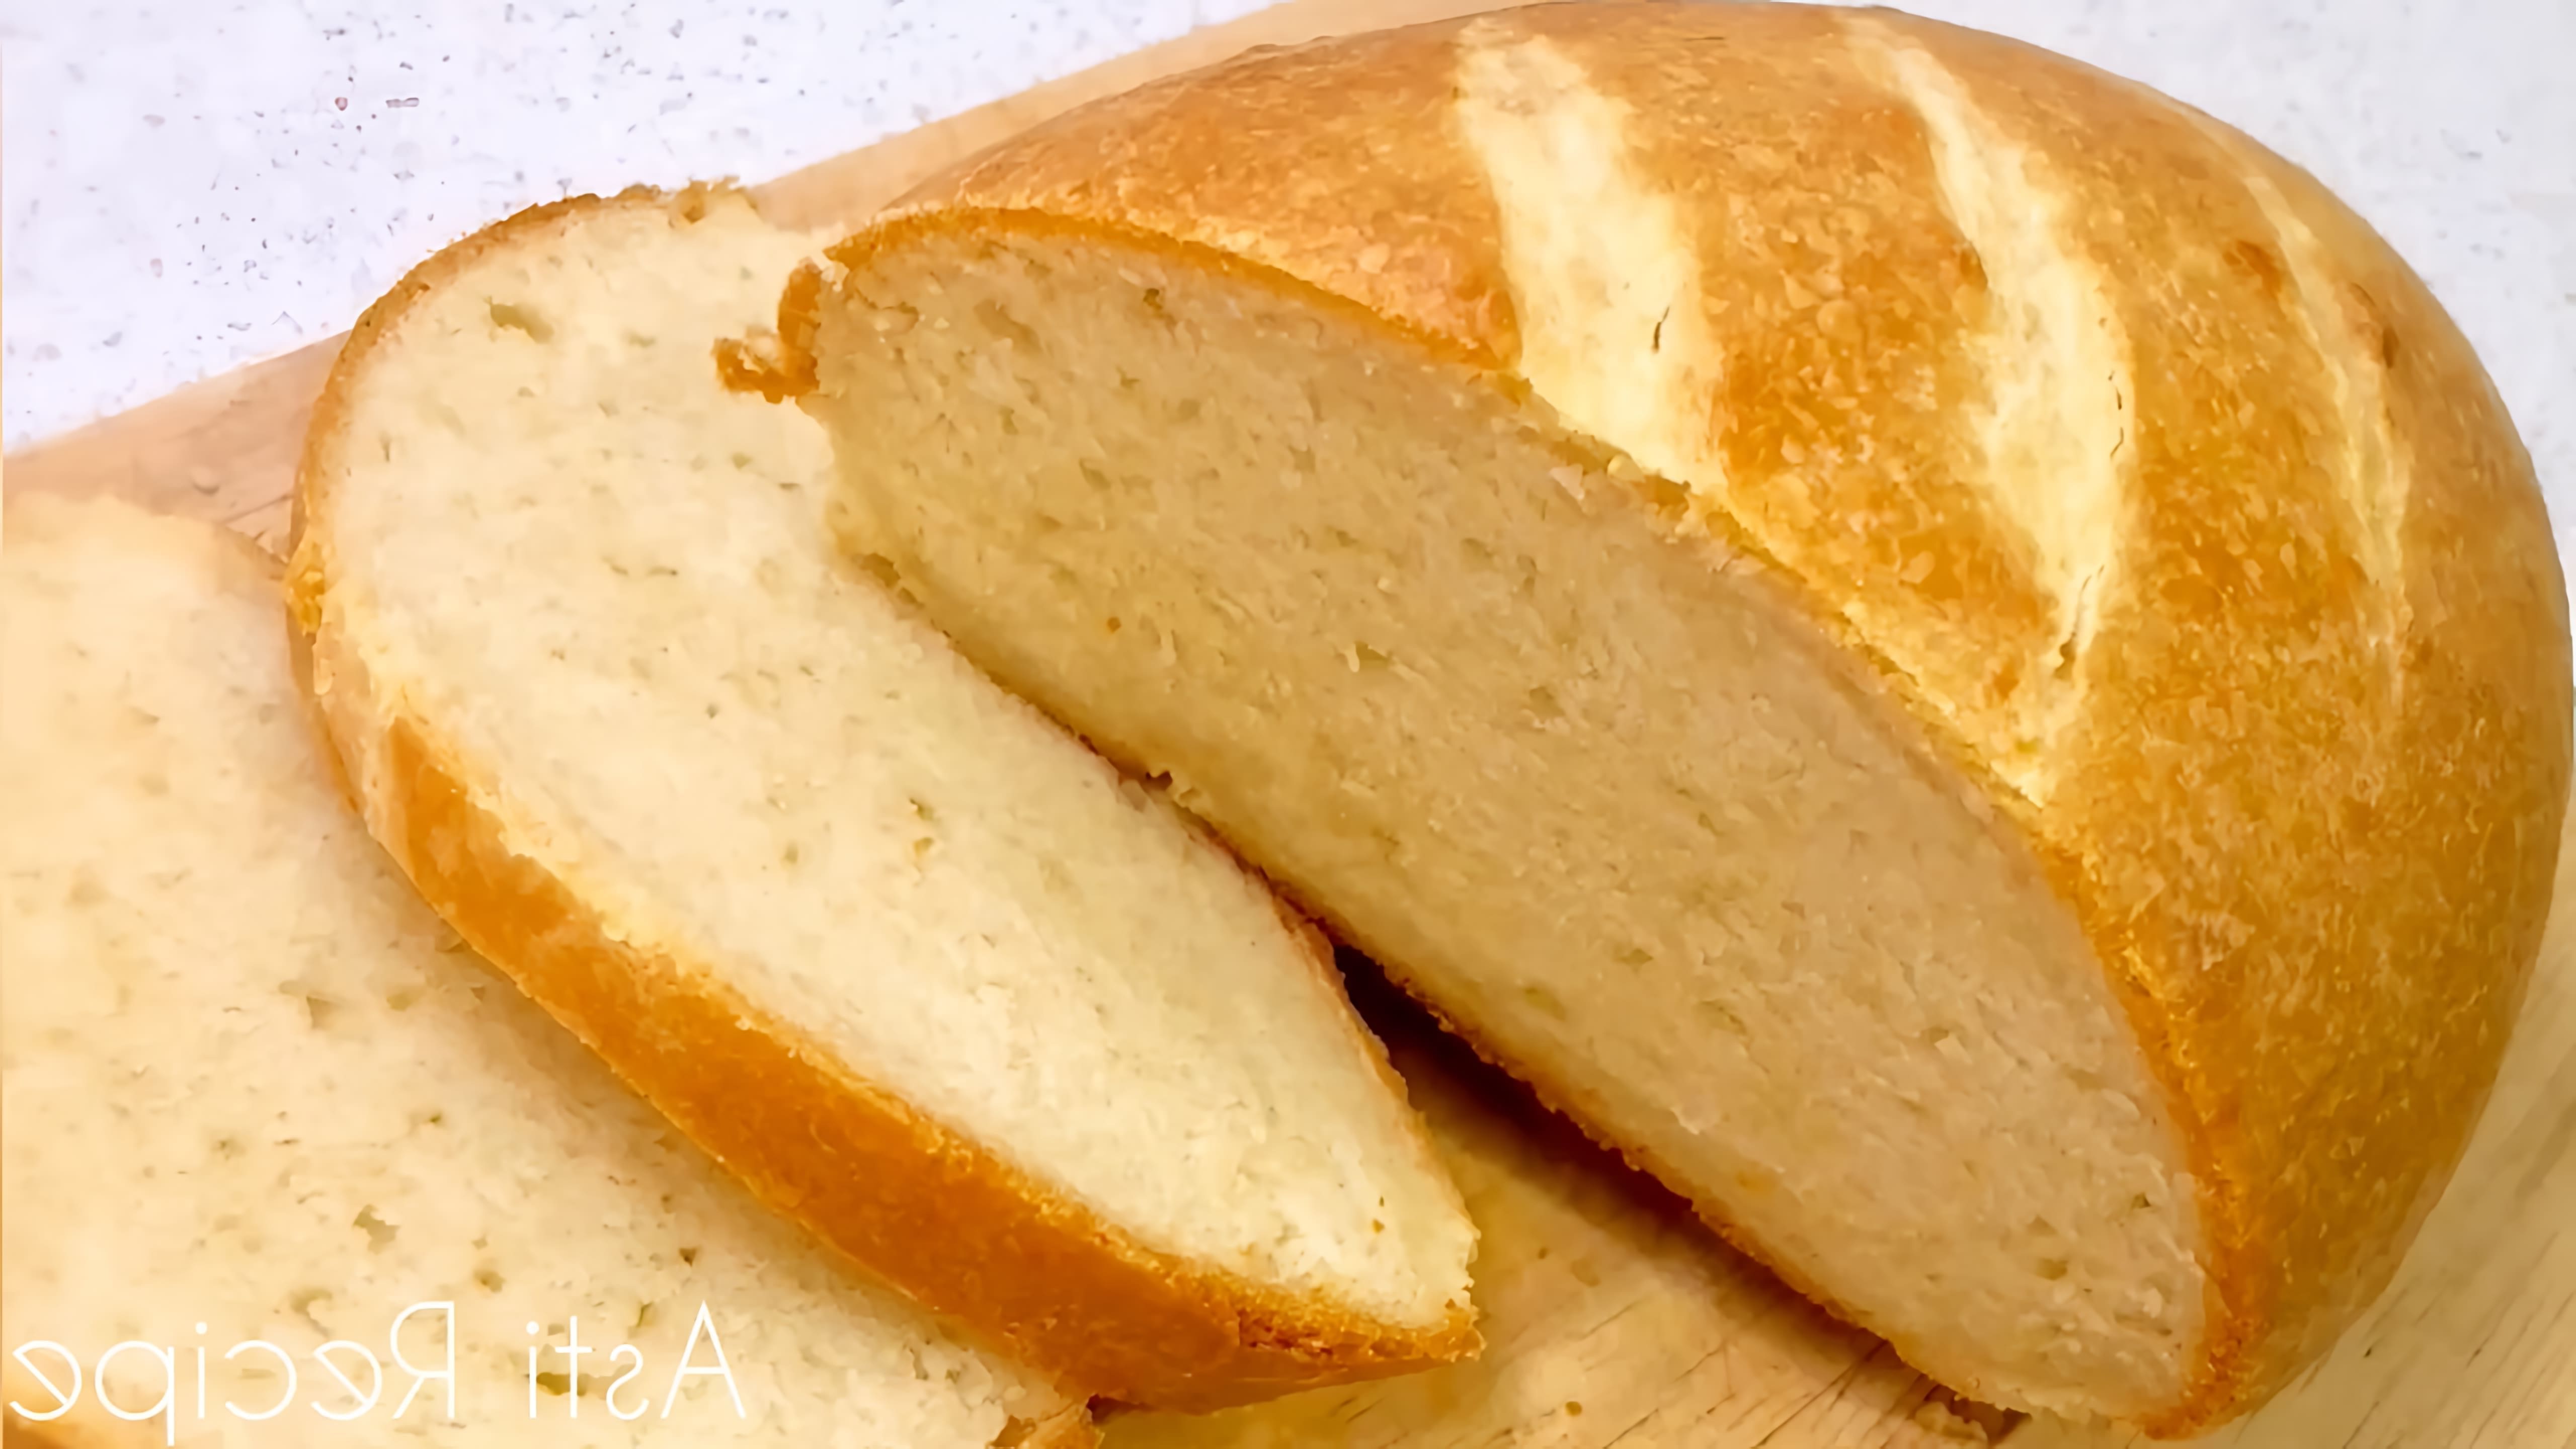 Хлеб на кефире - это быстро и полезно!

В этом видео-ролике мы покажем, как приготовить хлеб на кефире, который будет намного полезнее дрожжевого и не нужно ждать 2 часа, чтобы он был готов